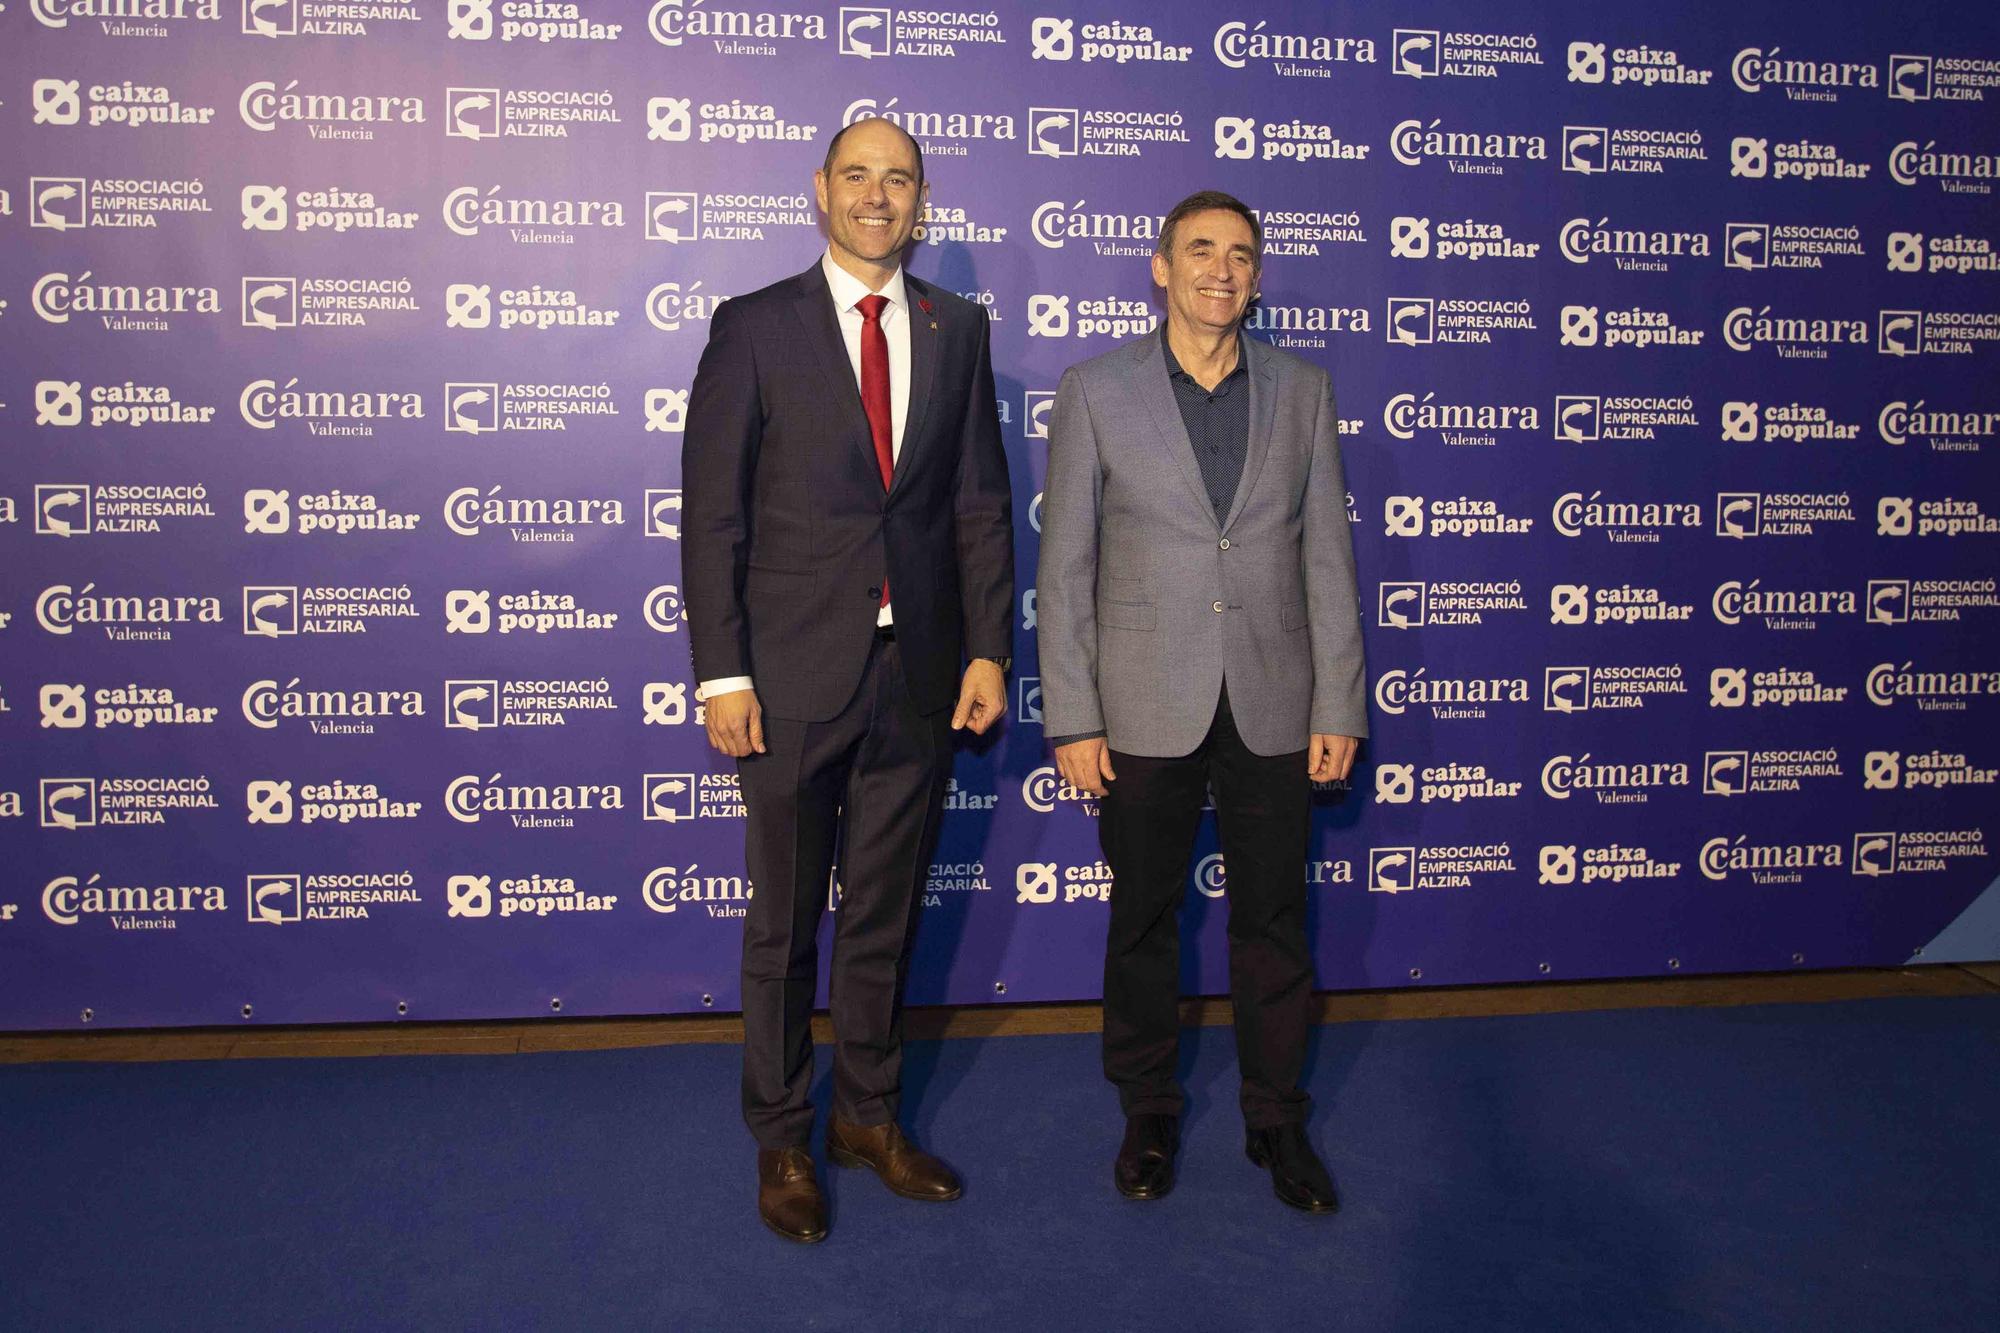 Las mejores imágenes de la Gala de la Economía de Alzira